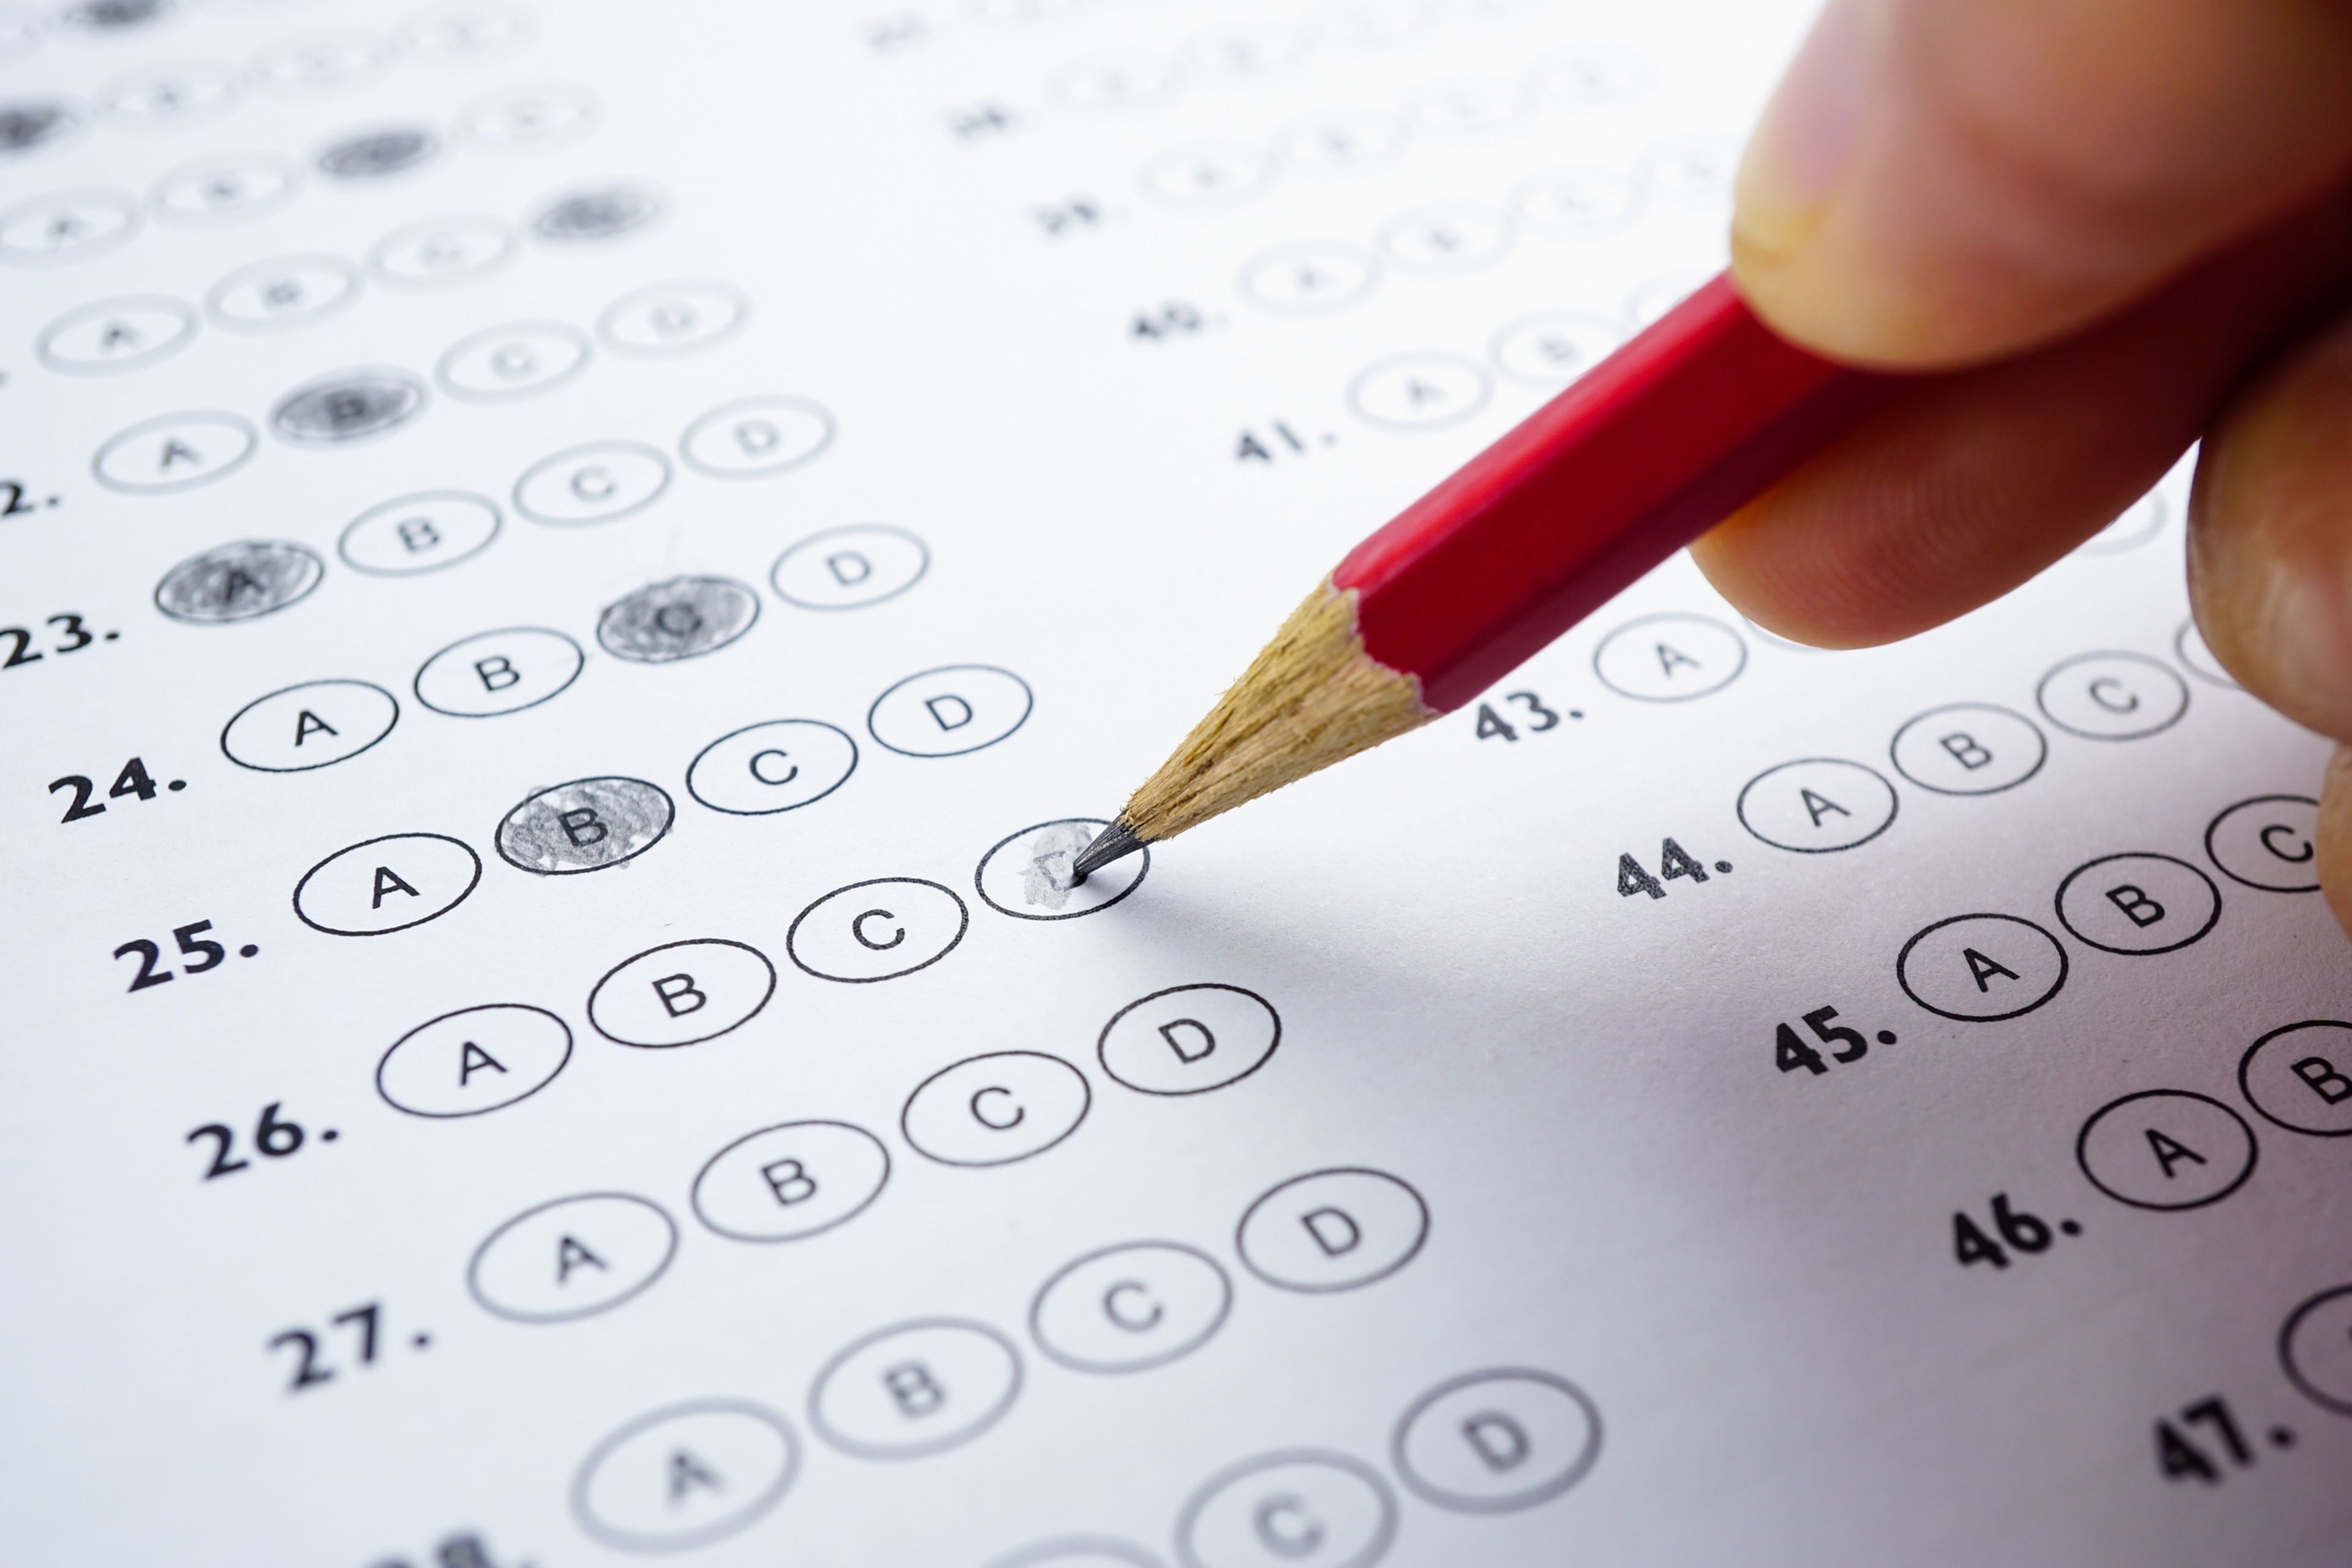 La fórmula para aprobar los exámenes tipo test con el mínimo riesgo